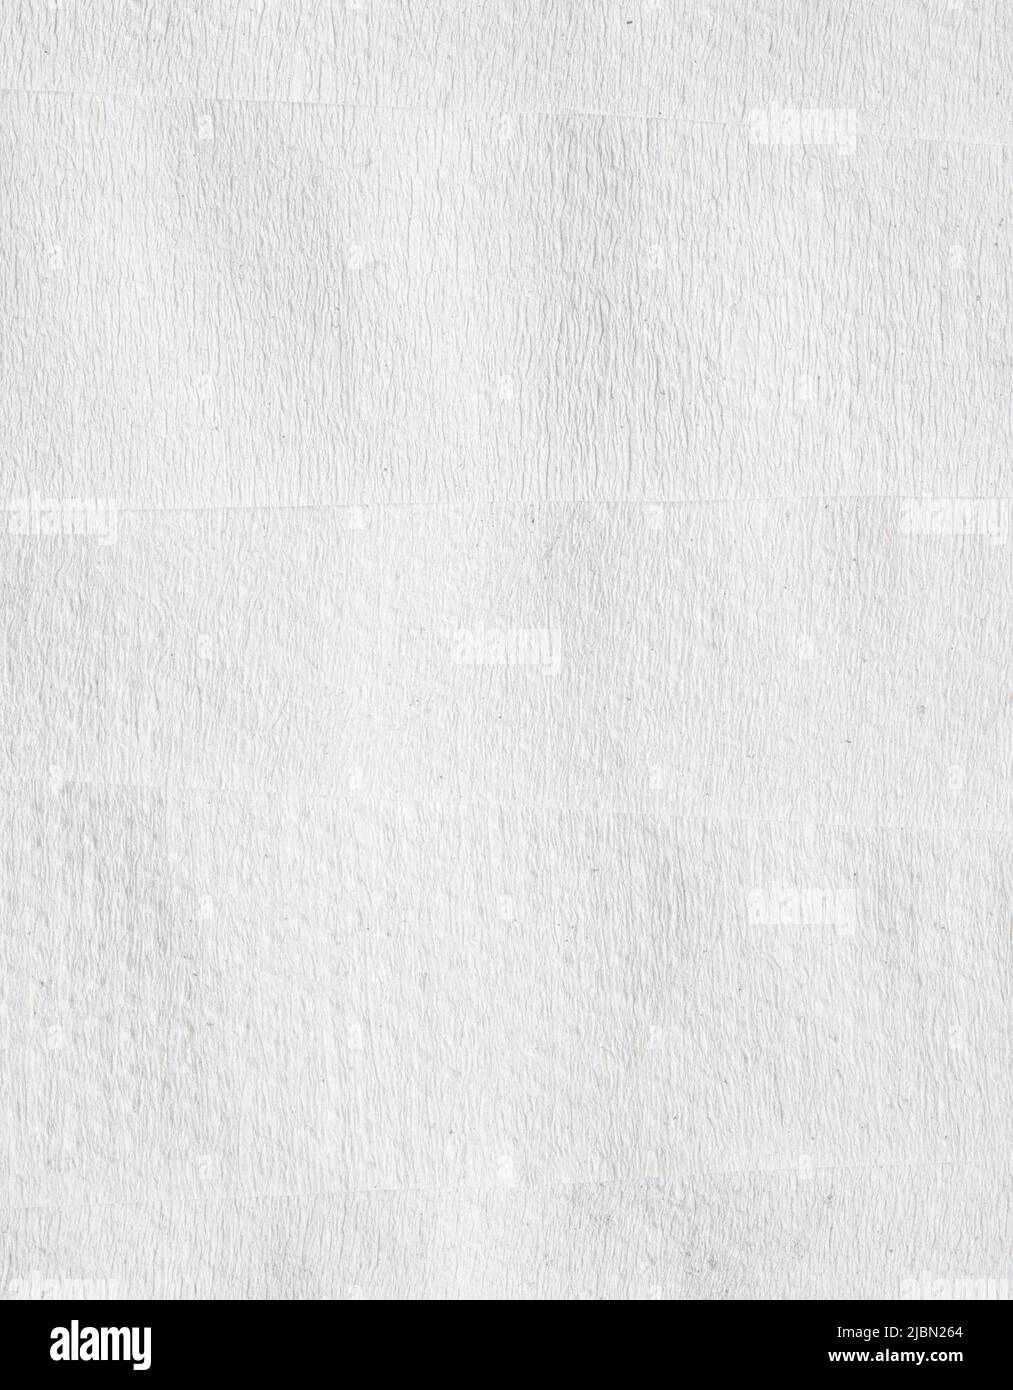 Papierhintergrund. Übereinander gestapelte Papierblätter. Detaillierte Textur aus recyceltem Kraftpapier. Stockfoto